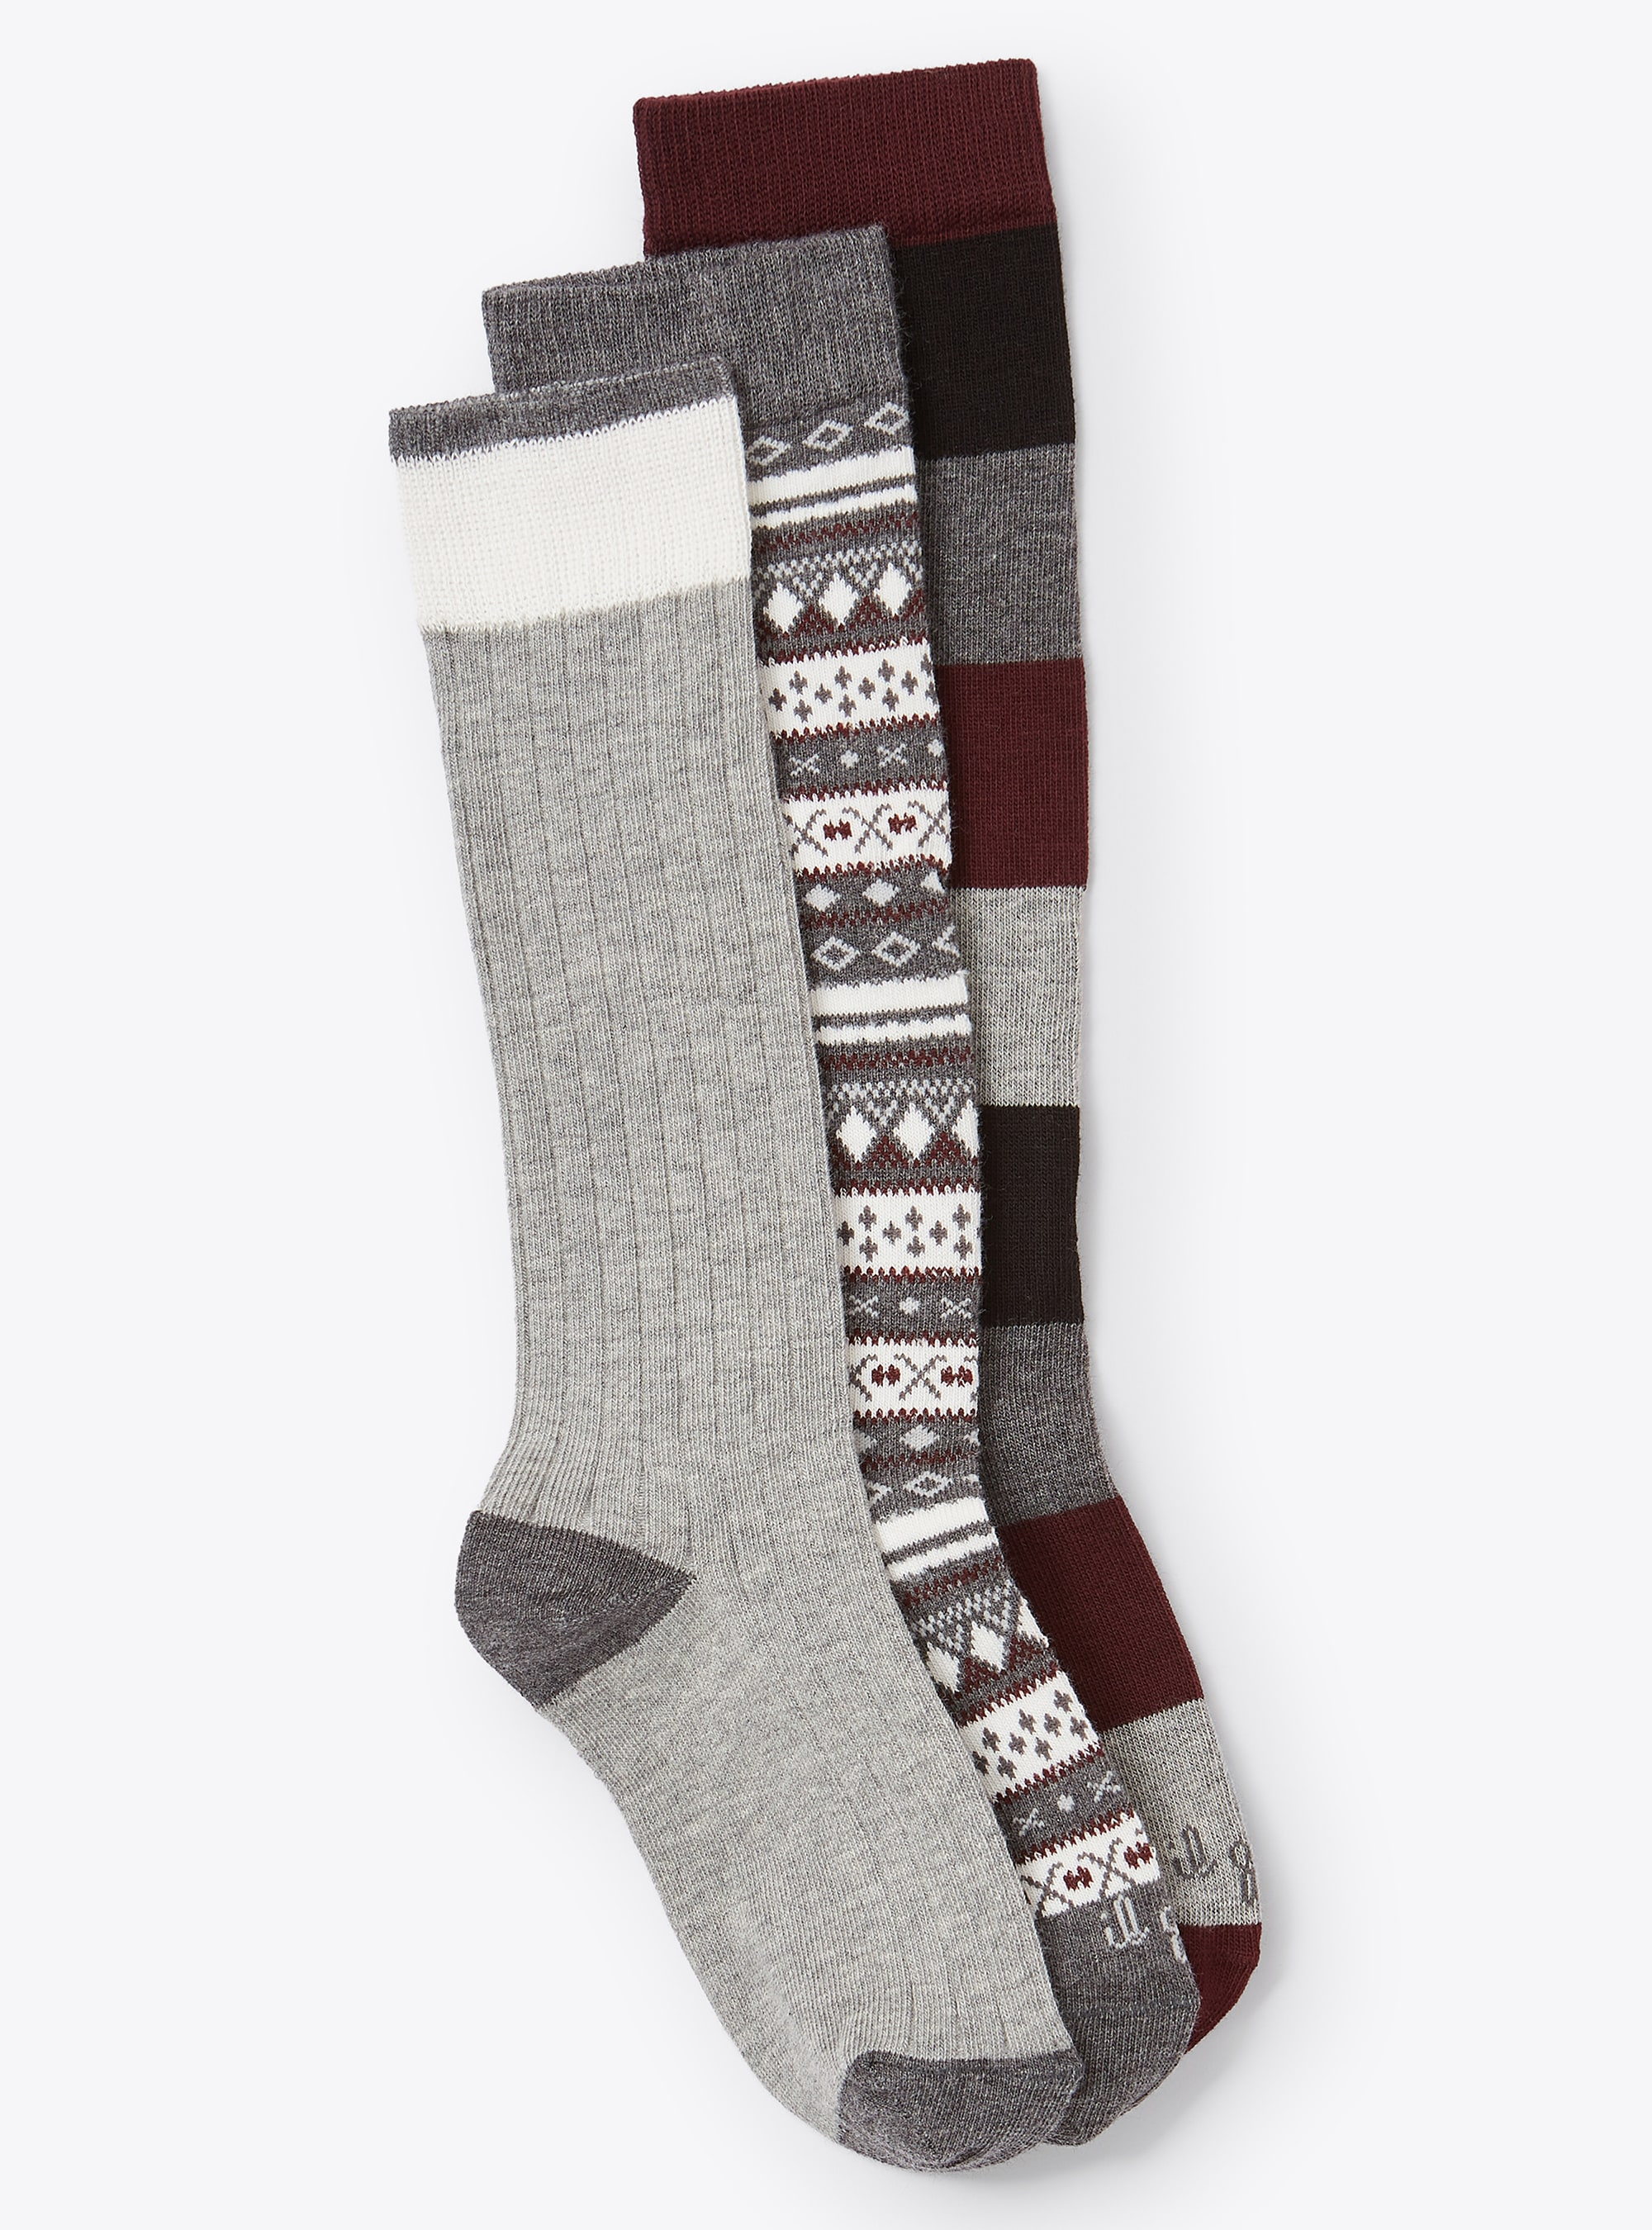 Boys' patterned socks three-pack set - Accessories - Il Gufo